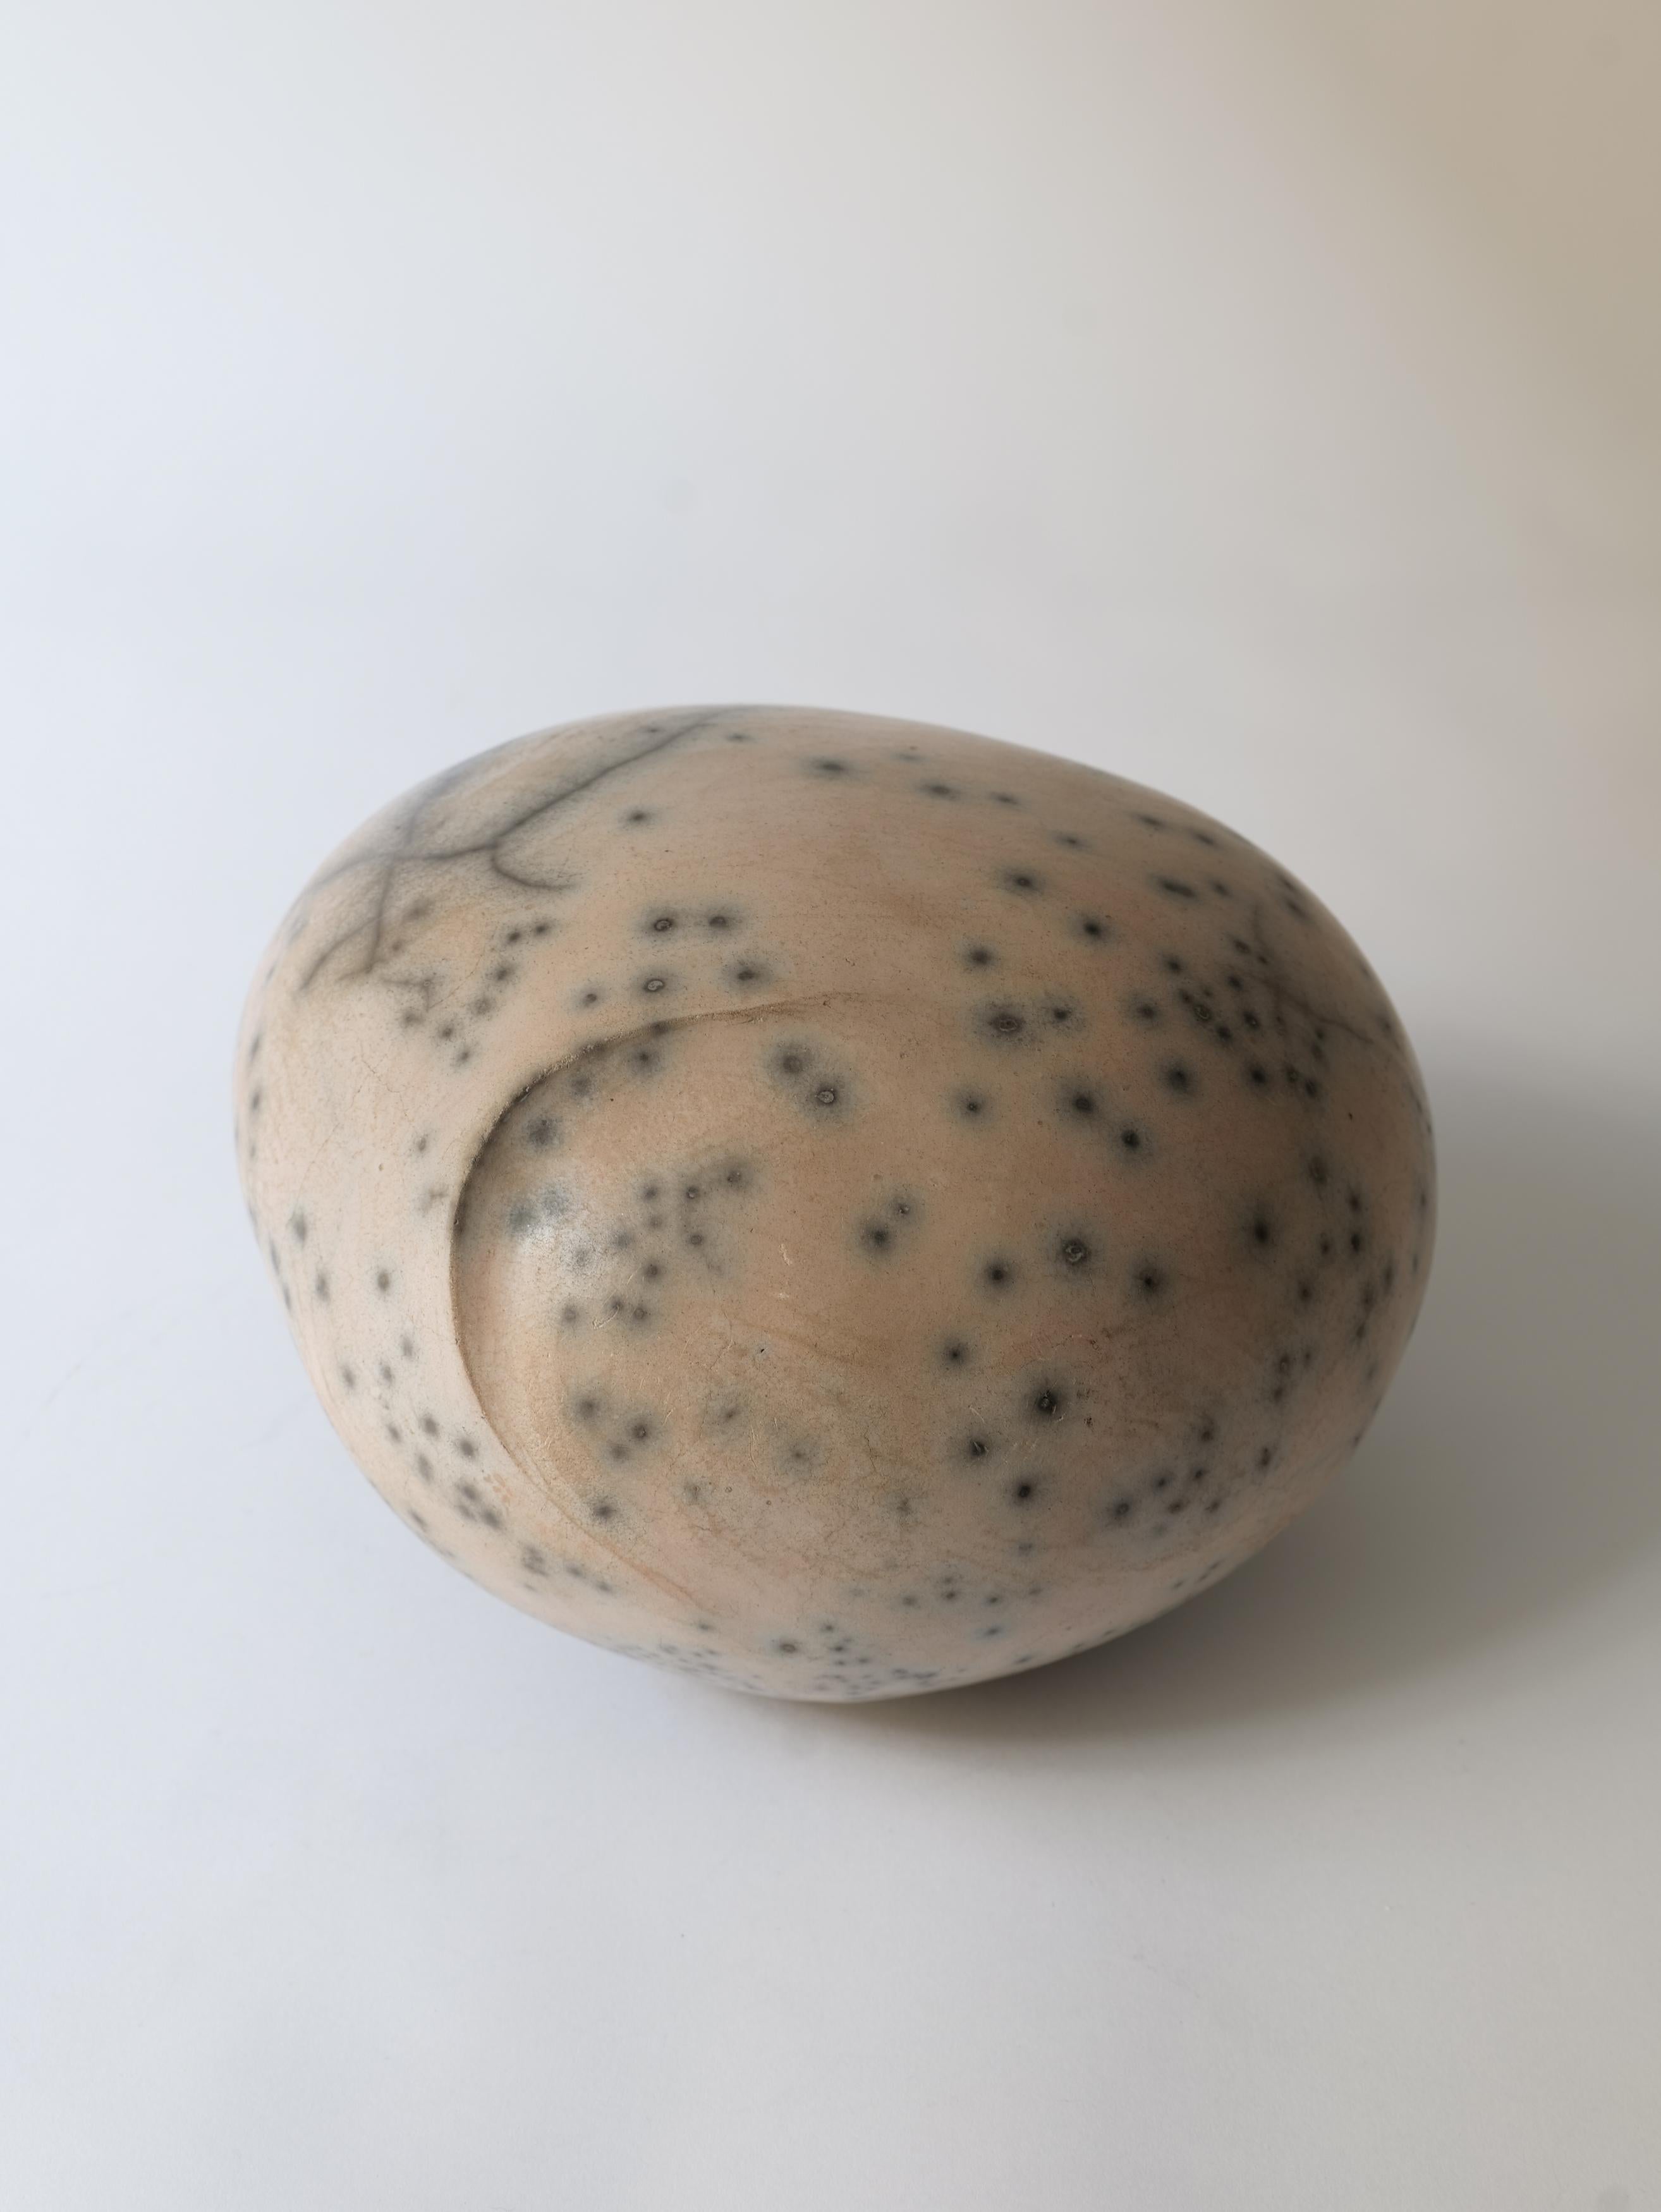 Eine polierte Keramikskulptur aus Steinzeug des zeitgenössischen französischen Keramikkünstlers Dominic Legros. Die glatte Oberfläche erinnert an nasse Kieselsteine in der Natur und wird nach dem Brennen von Hand poliert, so dass Variationen und